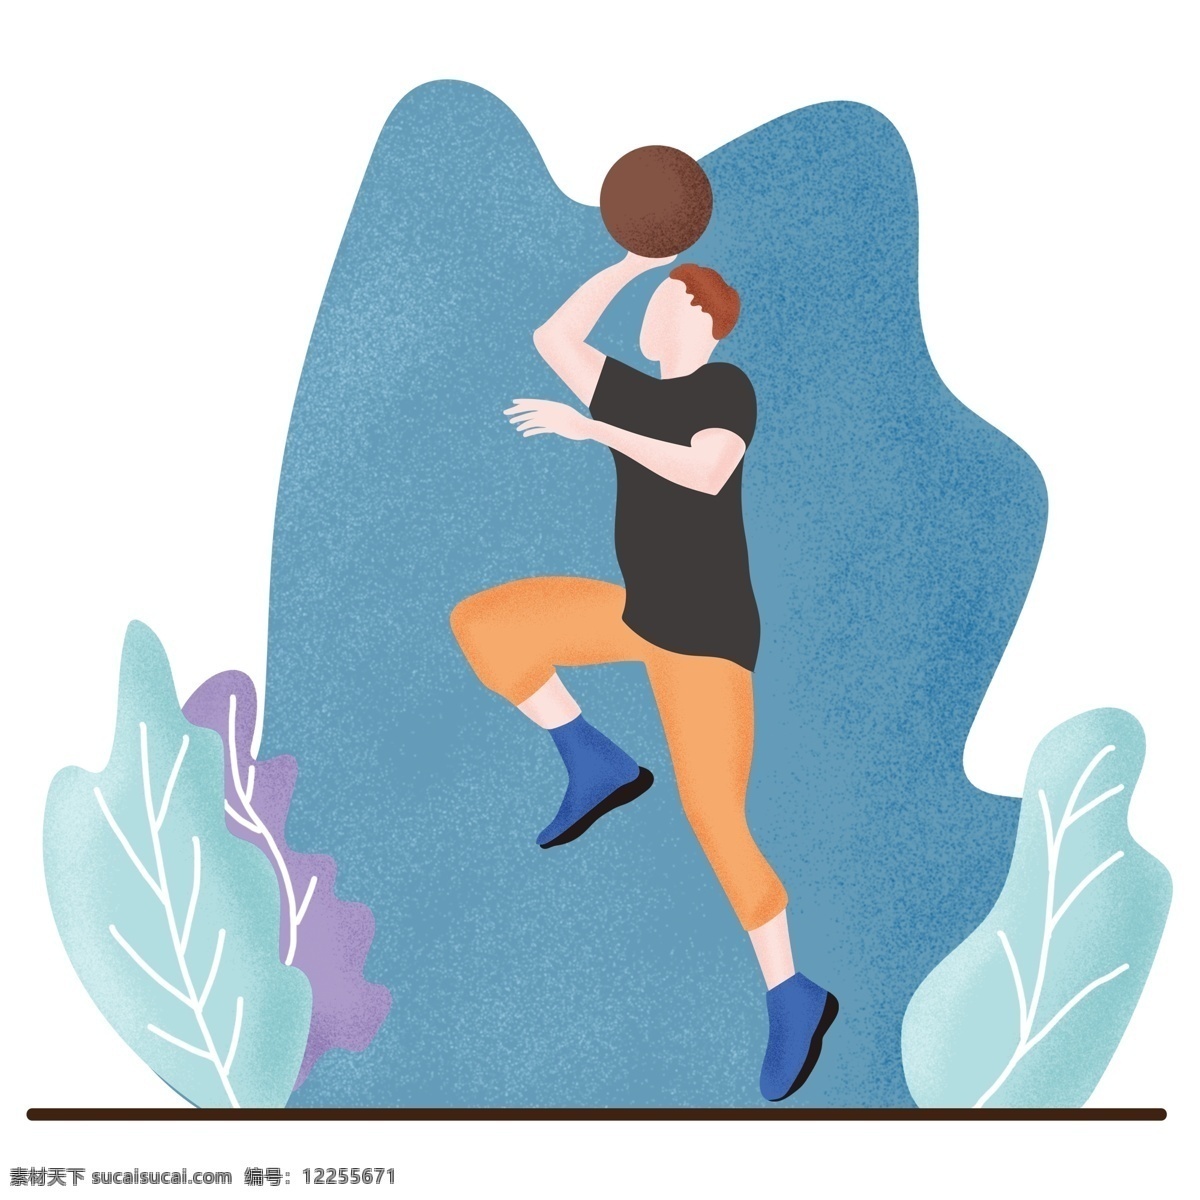 卡通 扁平 风 篮球 男孩 生活方式 人物 健康 健美 健身 塑形 彩色 慢跑 活动 跑步 运动